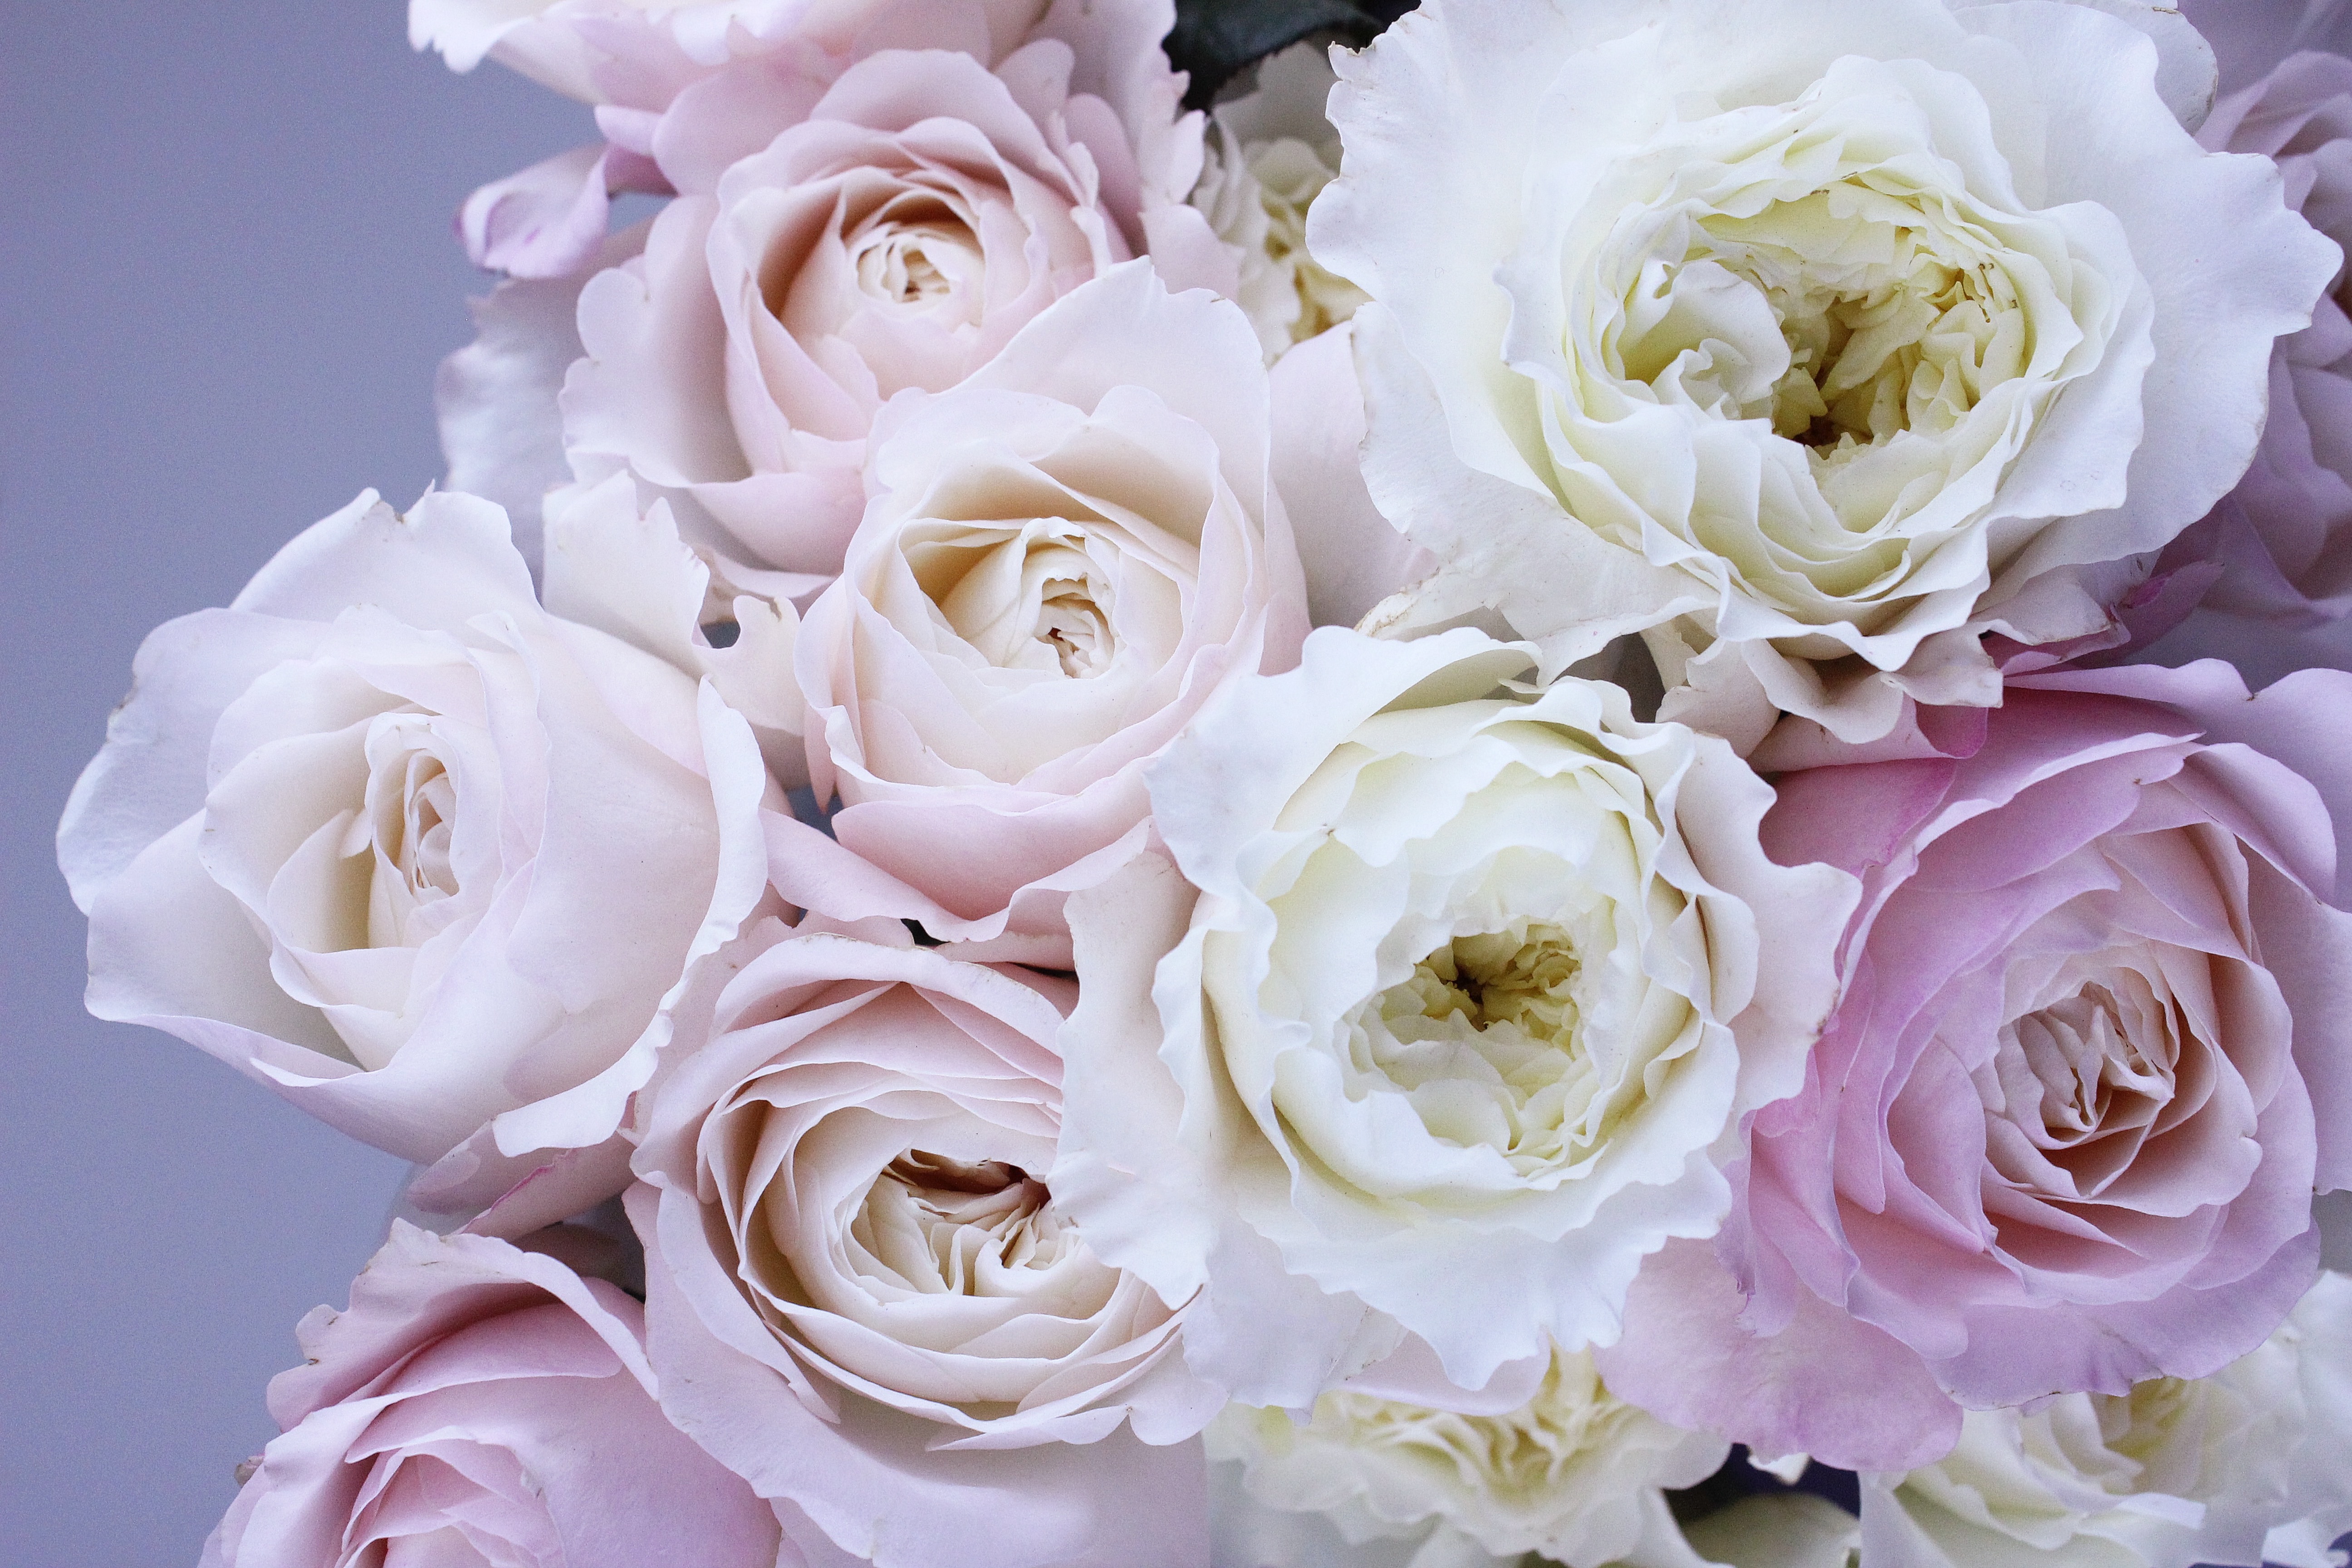 免费照片非常漂亮的白色和粉色玫瑰花束